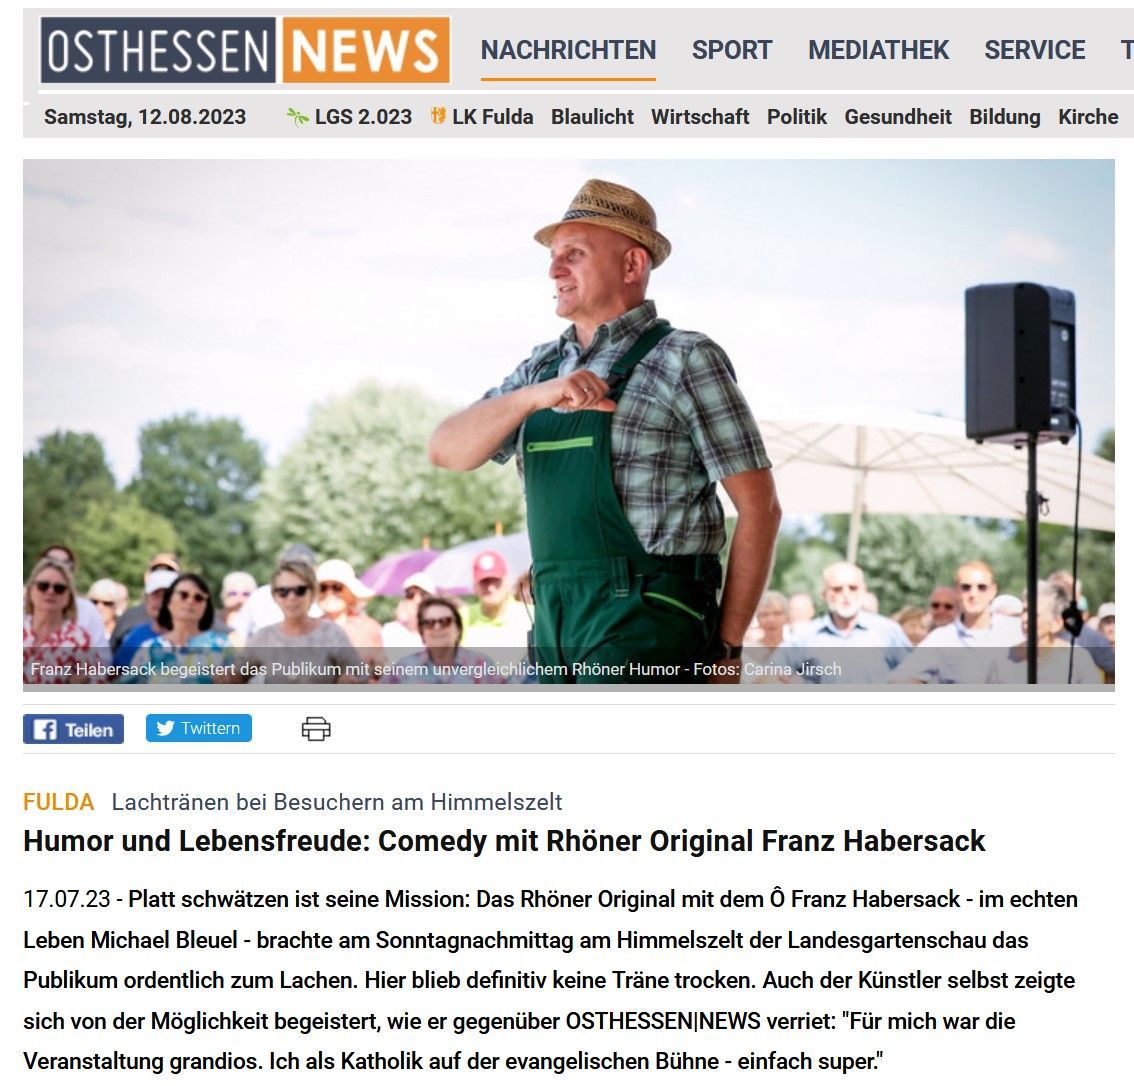 Comedy mit Rhöner Original Franz Habersack